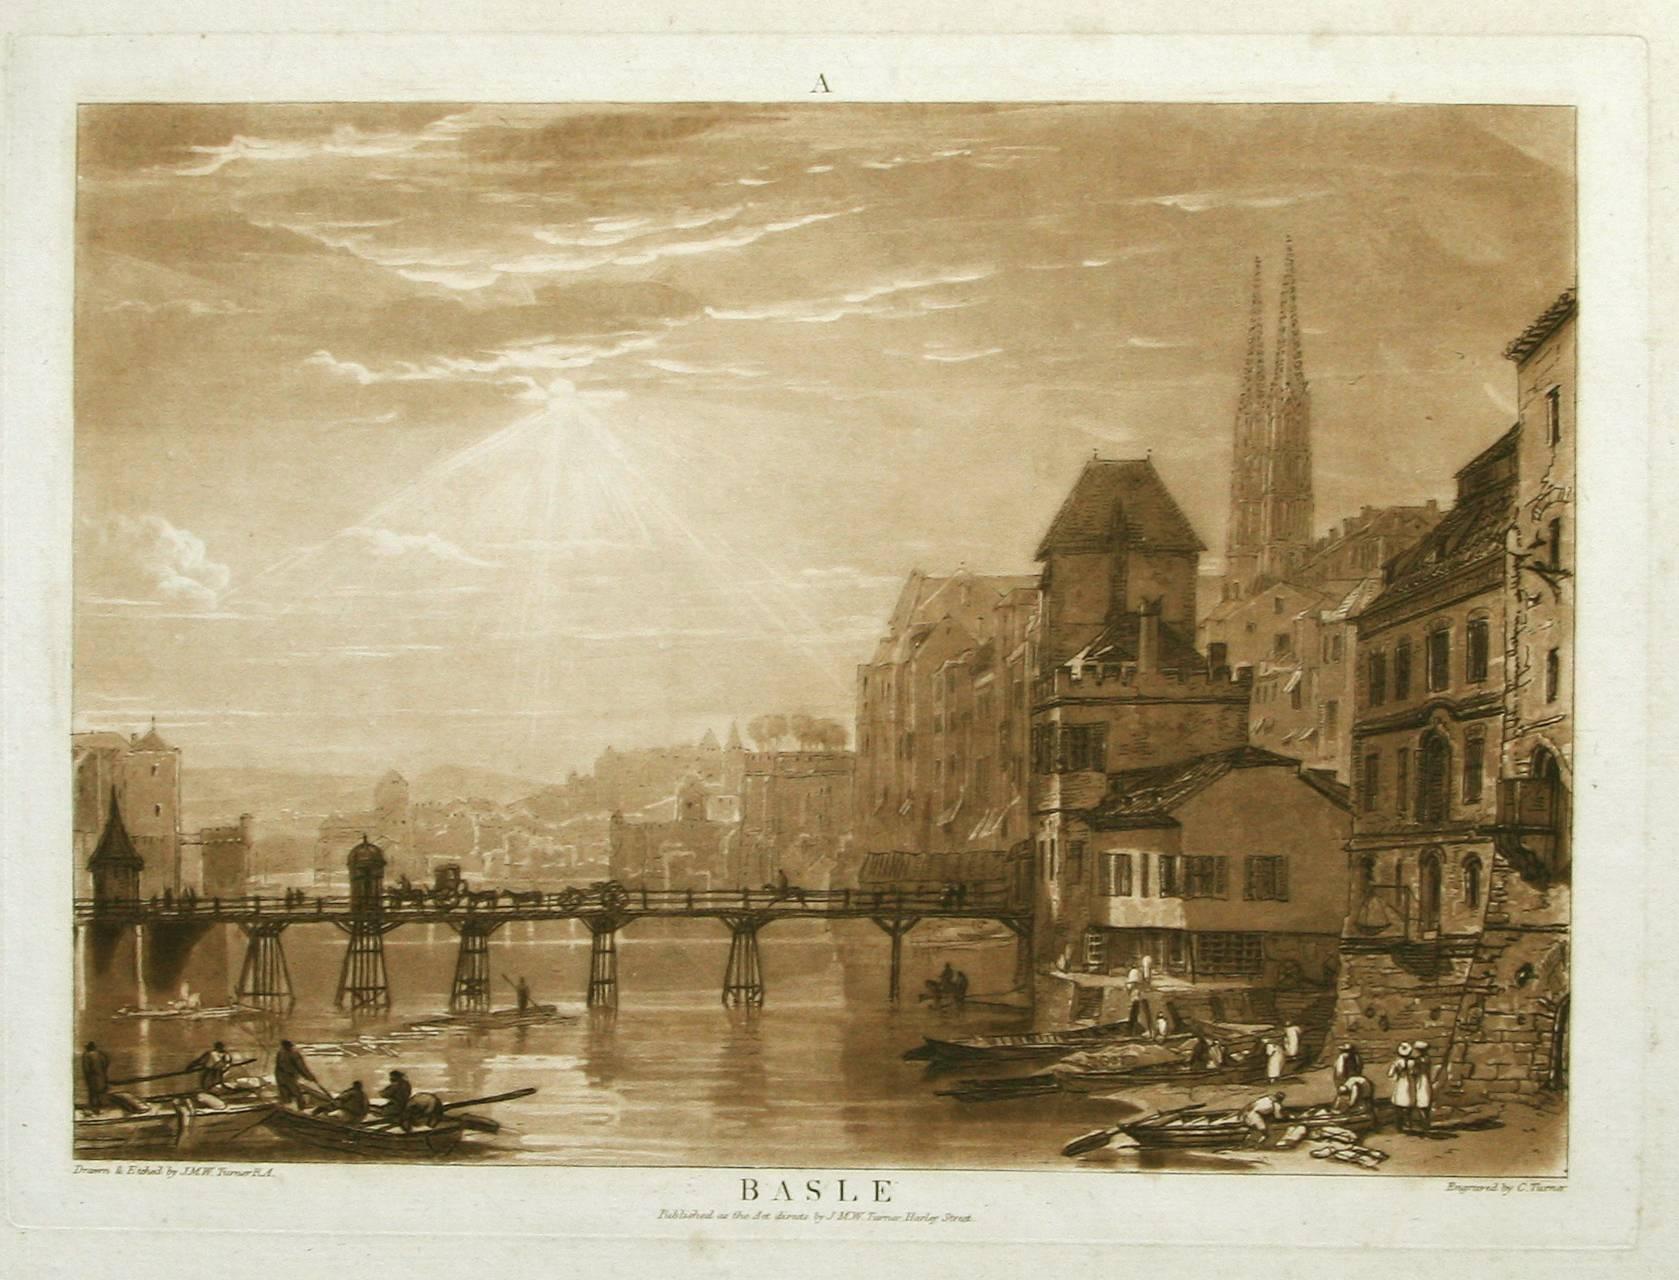 Basle - Print by J.M.W. Turner